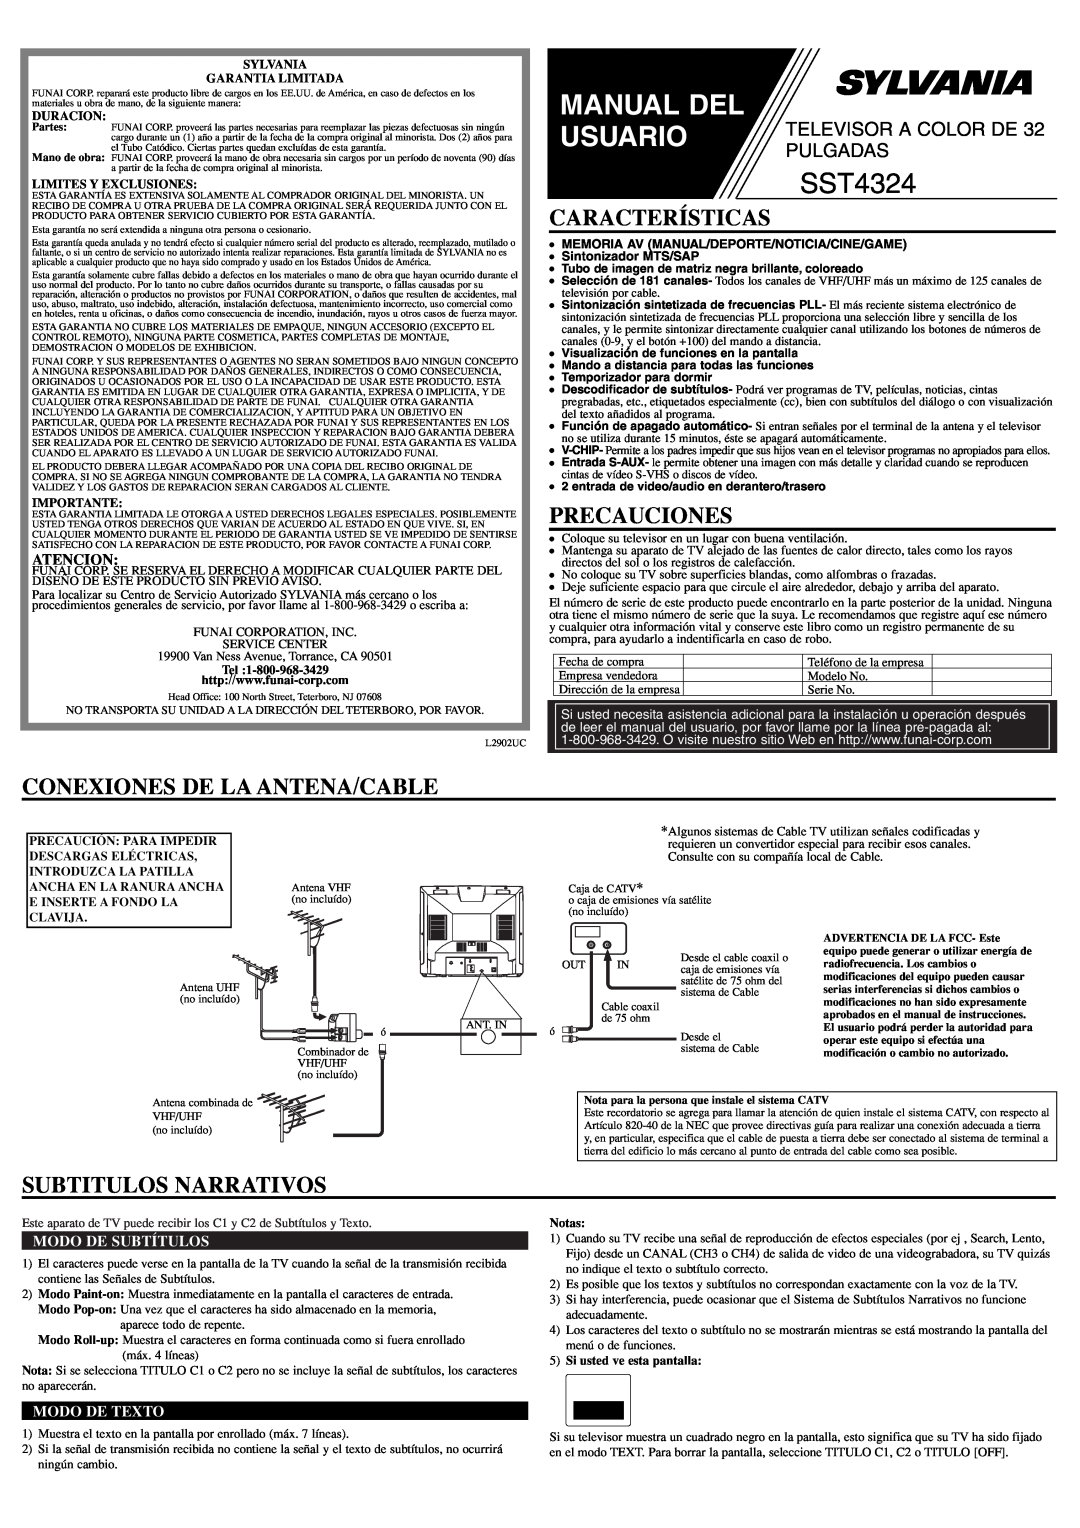 Sylvania SST4324 Características, Precauciones, Conexiones De La Antena/Cable, Subtitulos Narrativos, Atencion, Manual Del 